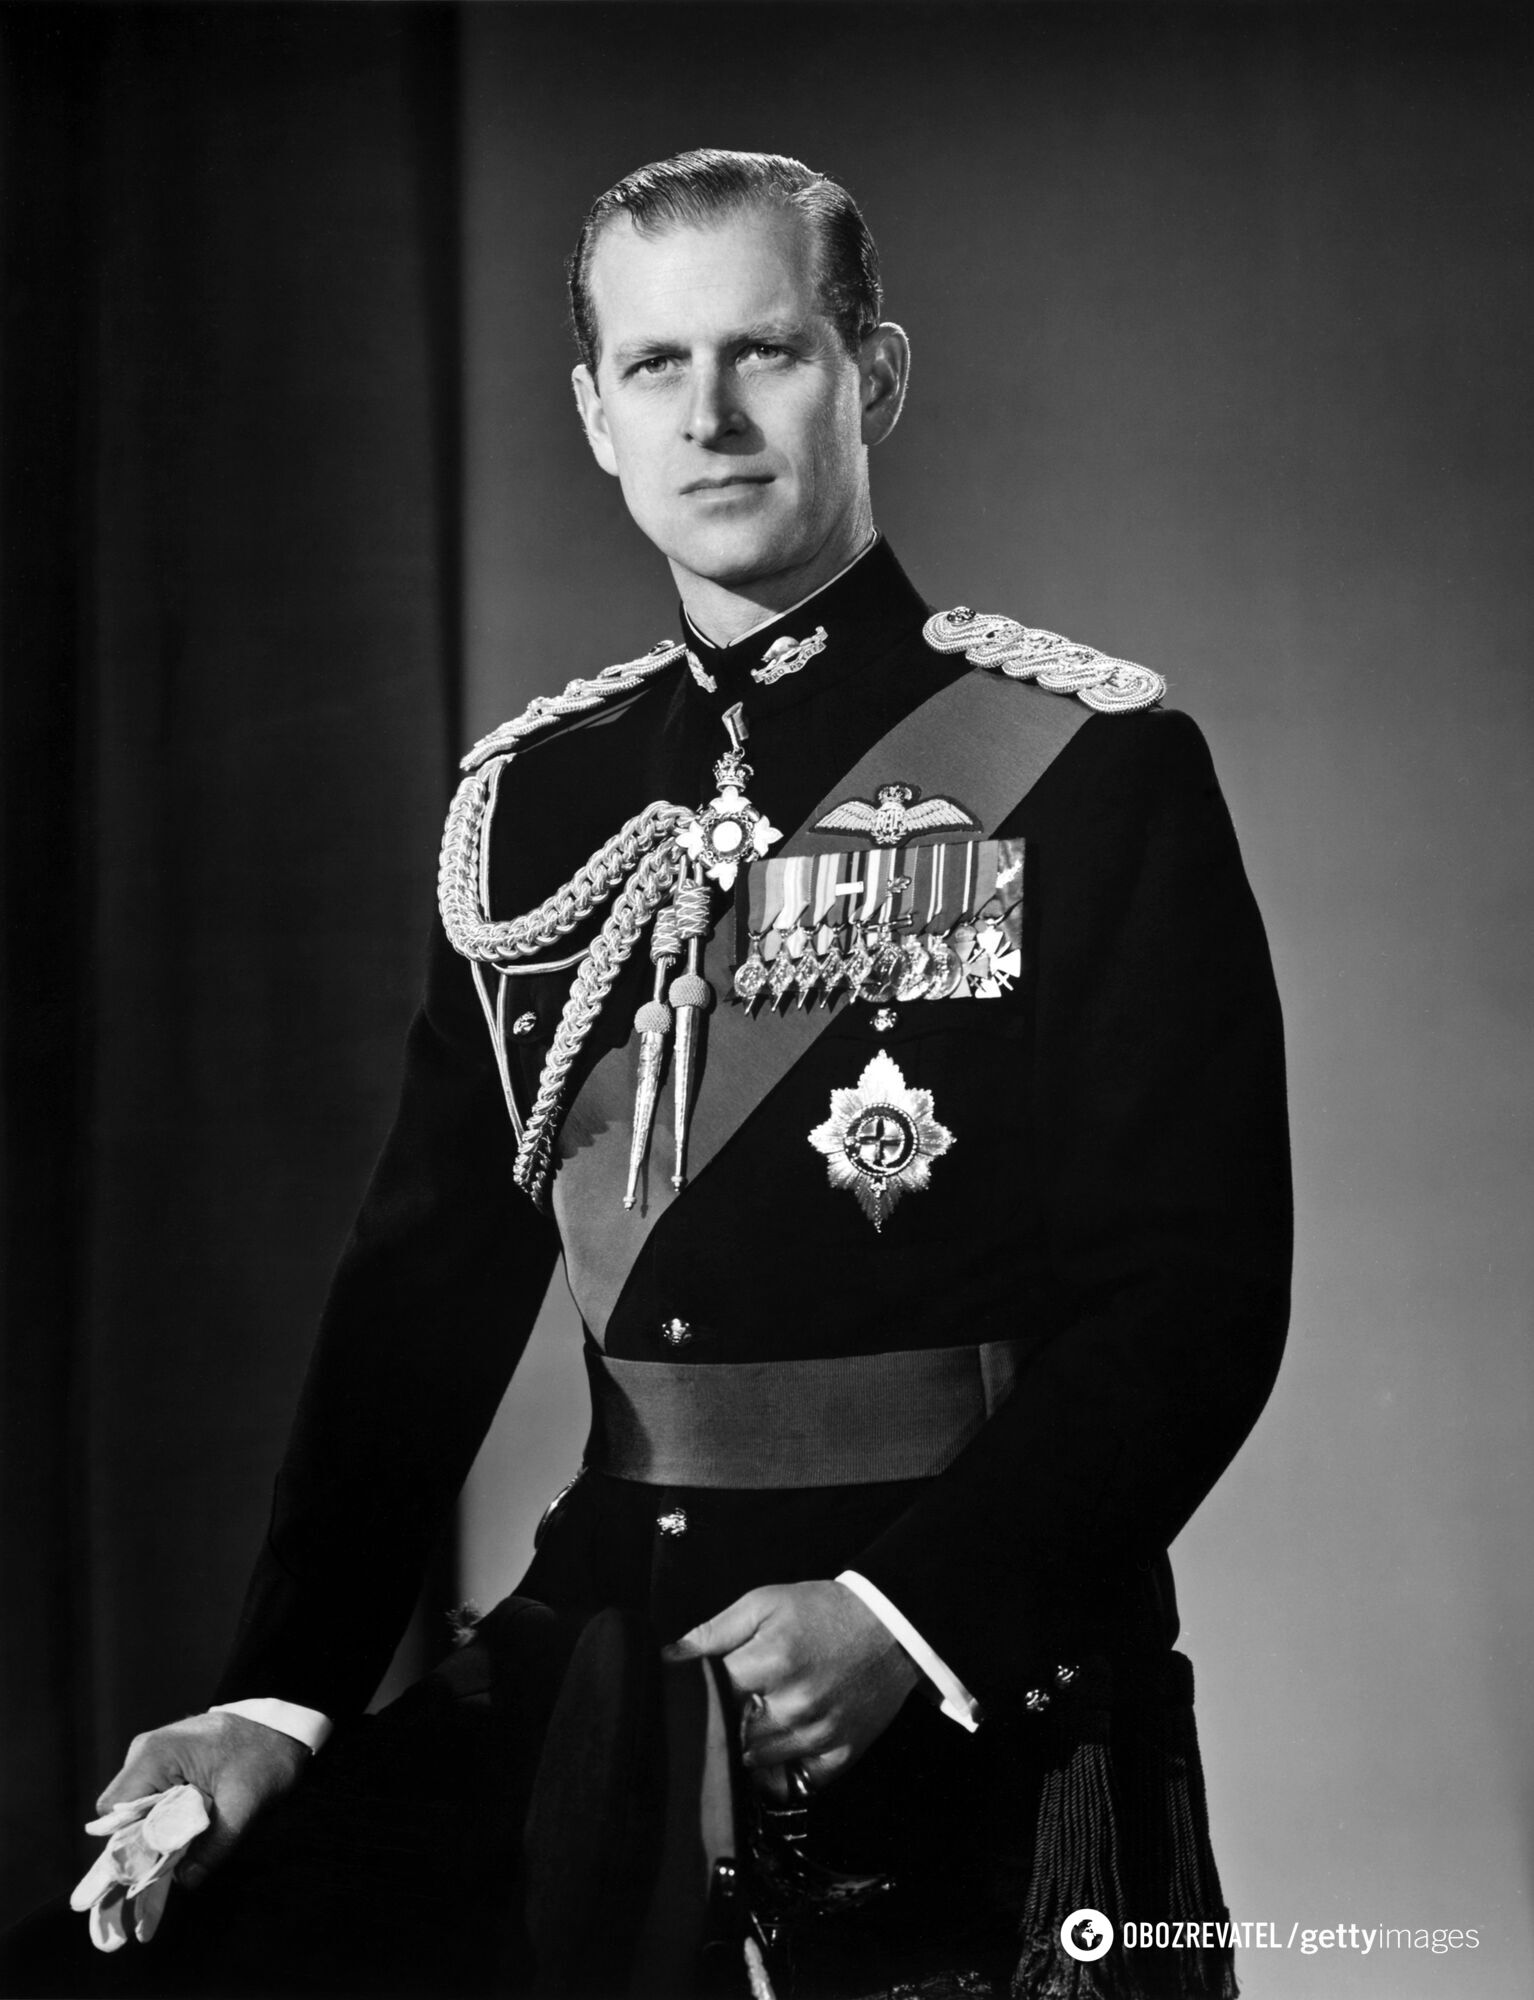 Принц Філіп брав участь у Другій світовій війні